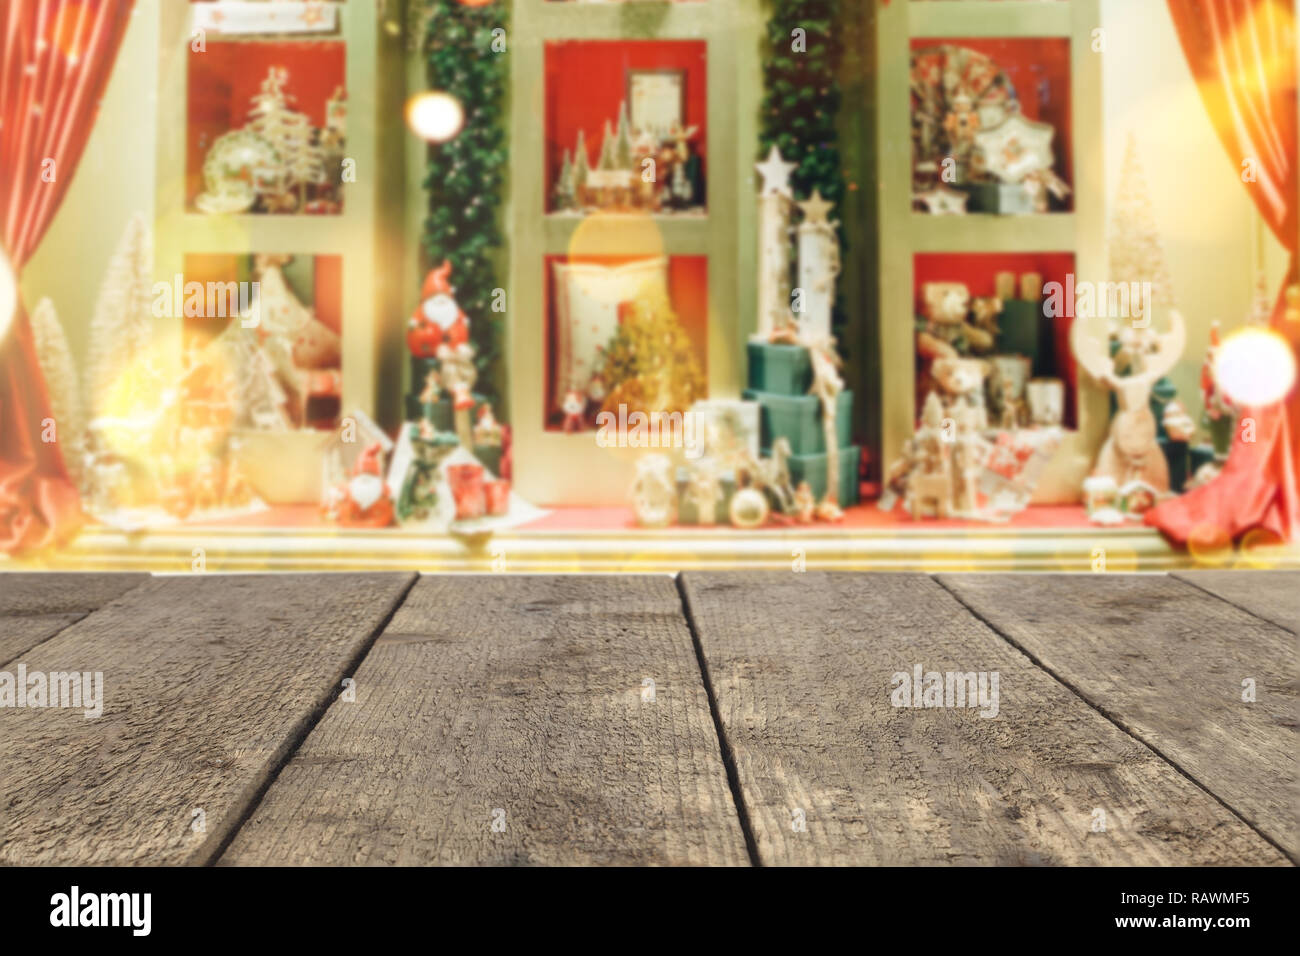 Holz- Tisch auf dem Hintergrund einer unscharfen Storefront in Weihnachten festlich eingerichtet - können verwendet werden, um die Montage, oder präsentieren Sie Ihre Produkte Stockfoto